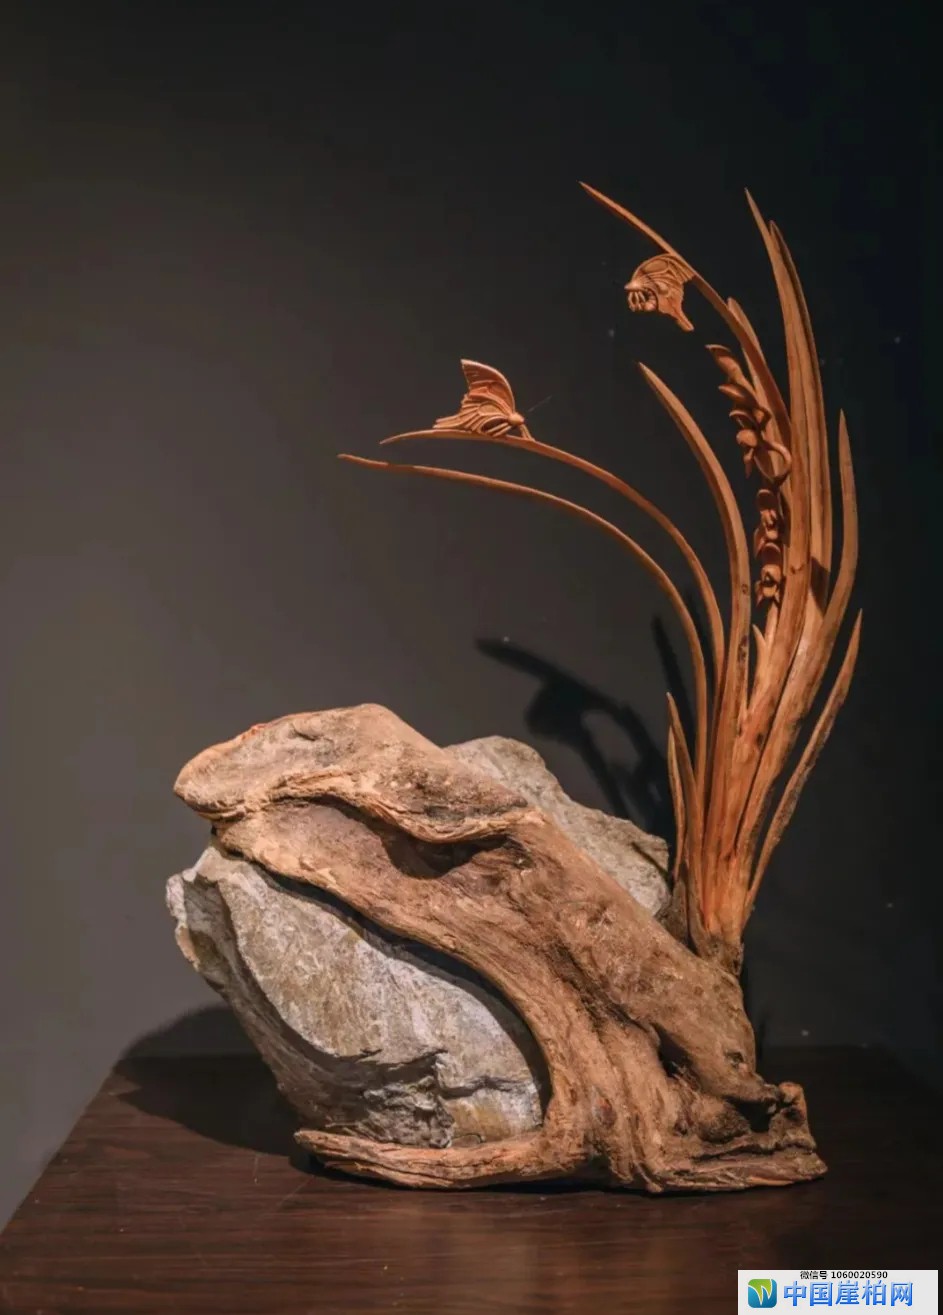 根艺师叶小明和他的木雕兰花